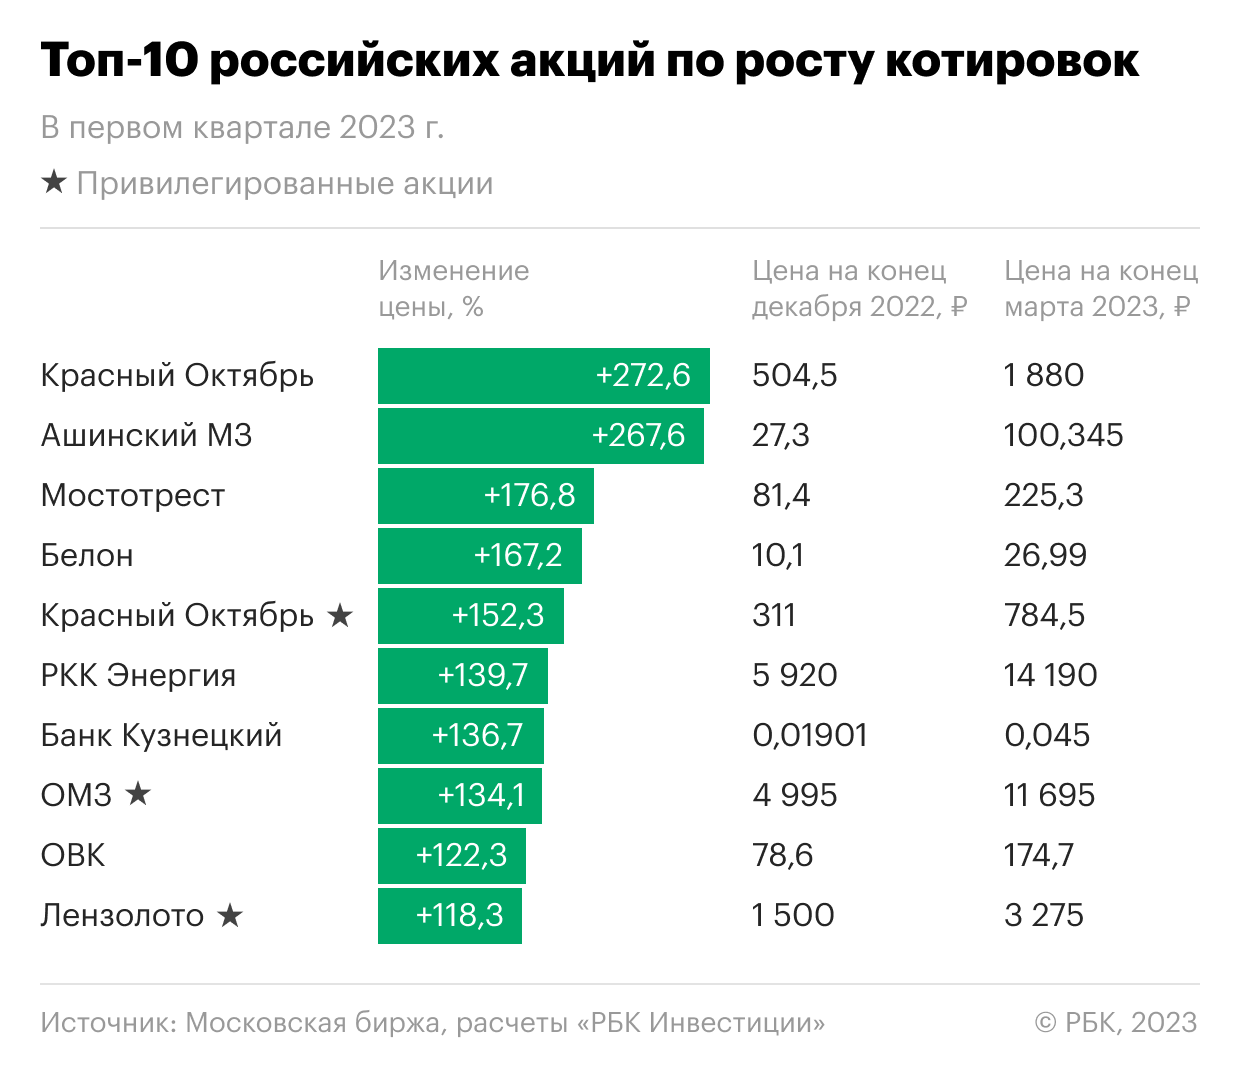 Десять лучших акций российских компаний в первом квартале 2023 года